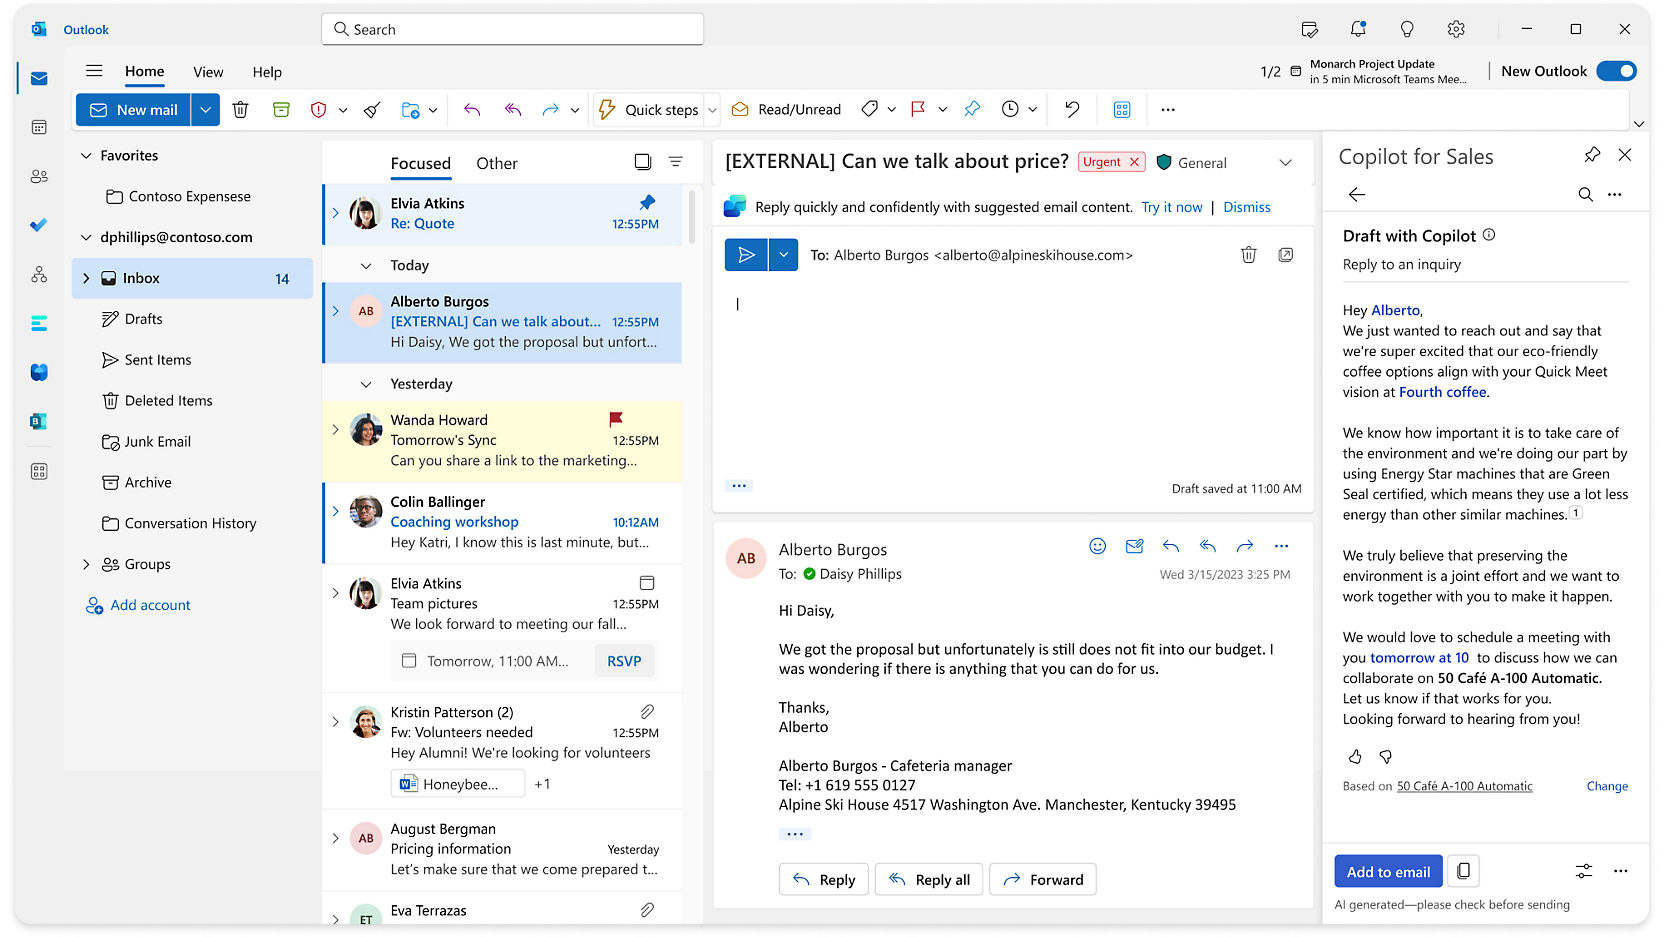 لقطة شاشة لتطبيق البريد الإلكتروني لـ Microsoft Outlook.